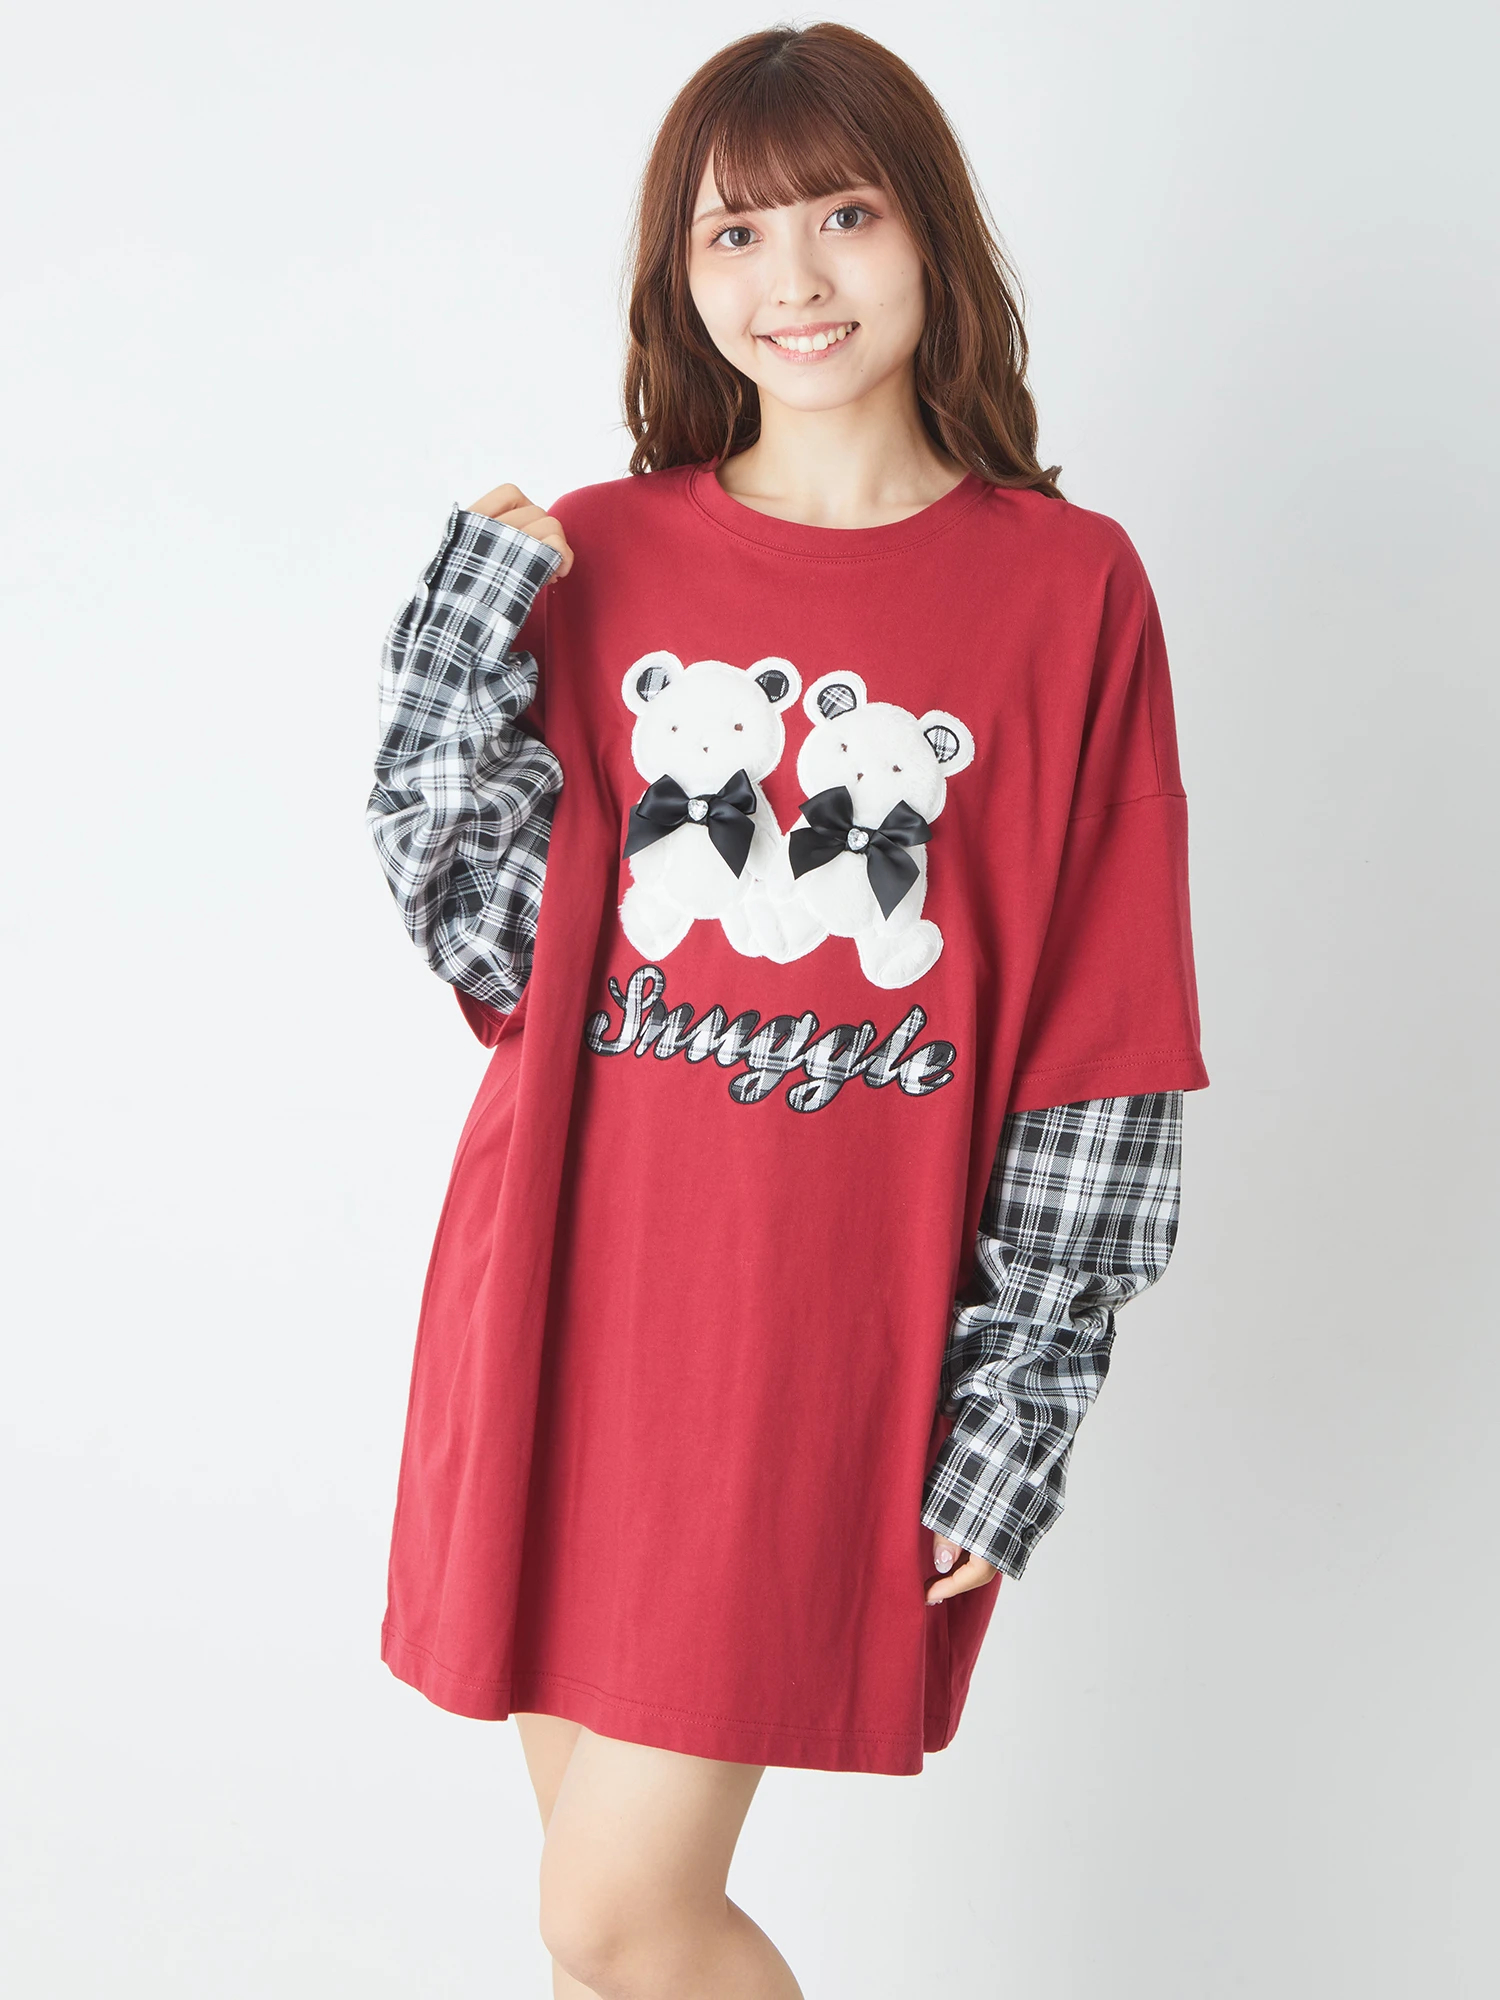 ふたごくまちゃんロンTe - Ank Rouge(アンクルージュ)のTシャツ